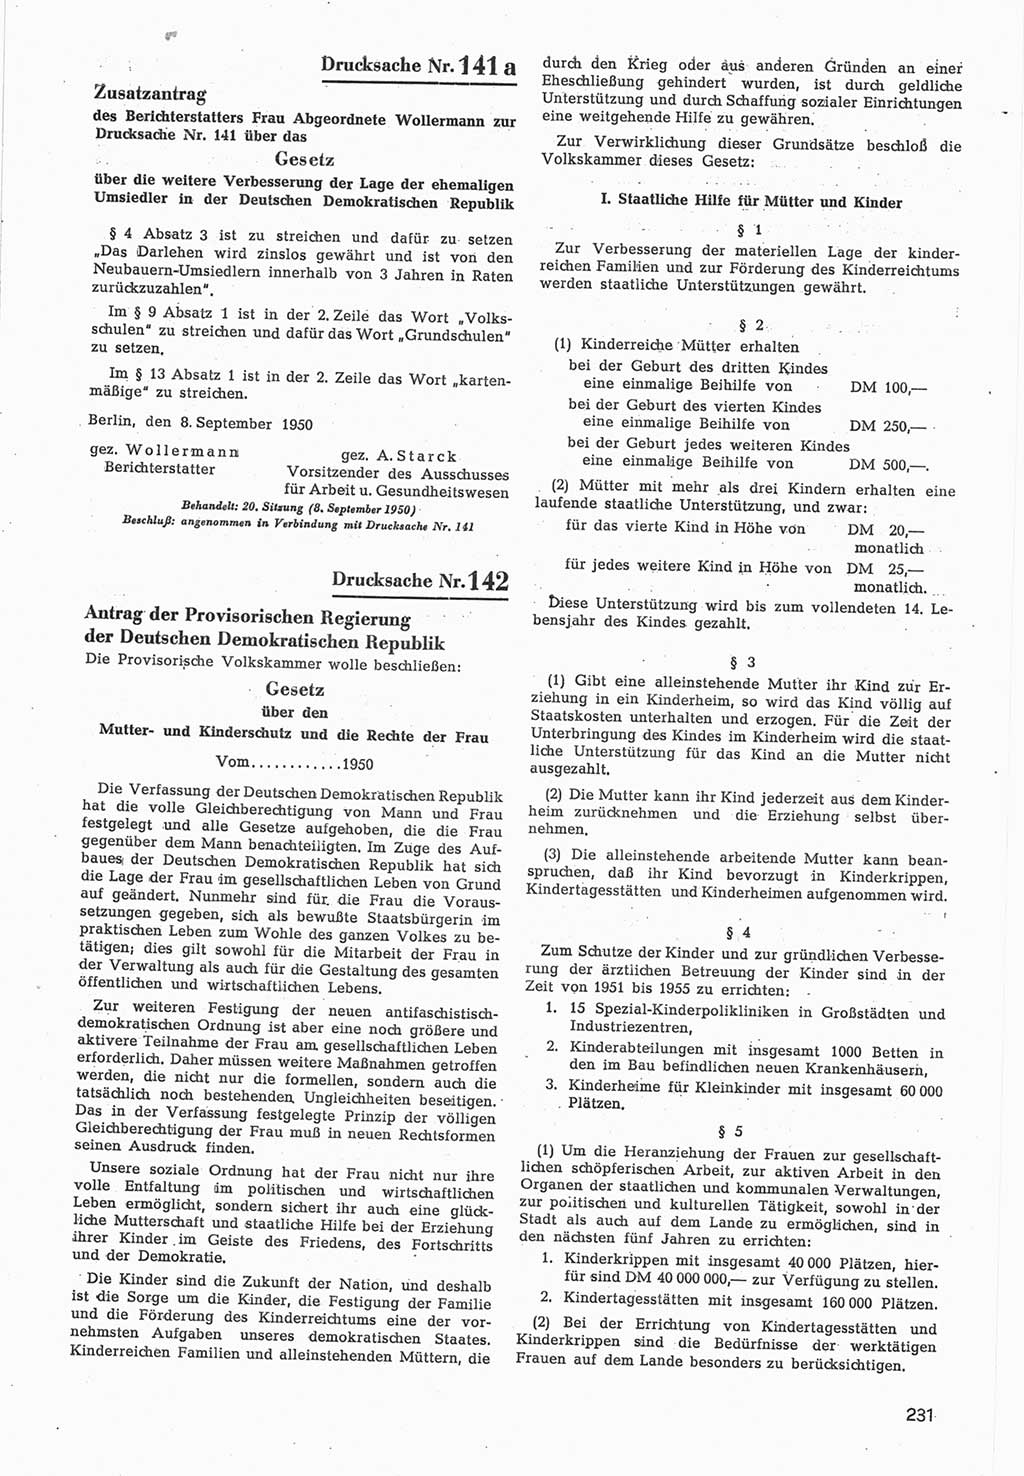 Provisorische Volkskammer (VK) der Deutschen Demokratischen Republik (DDR) 1949-1950, Dokument 833 (Prov. VK DDR 1949-1950, Dok. 833)